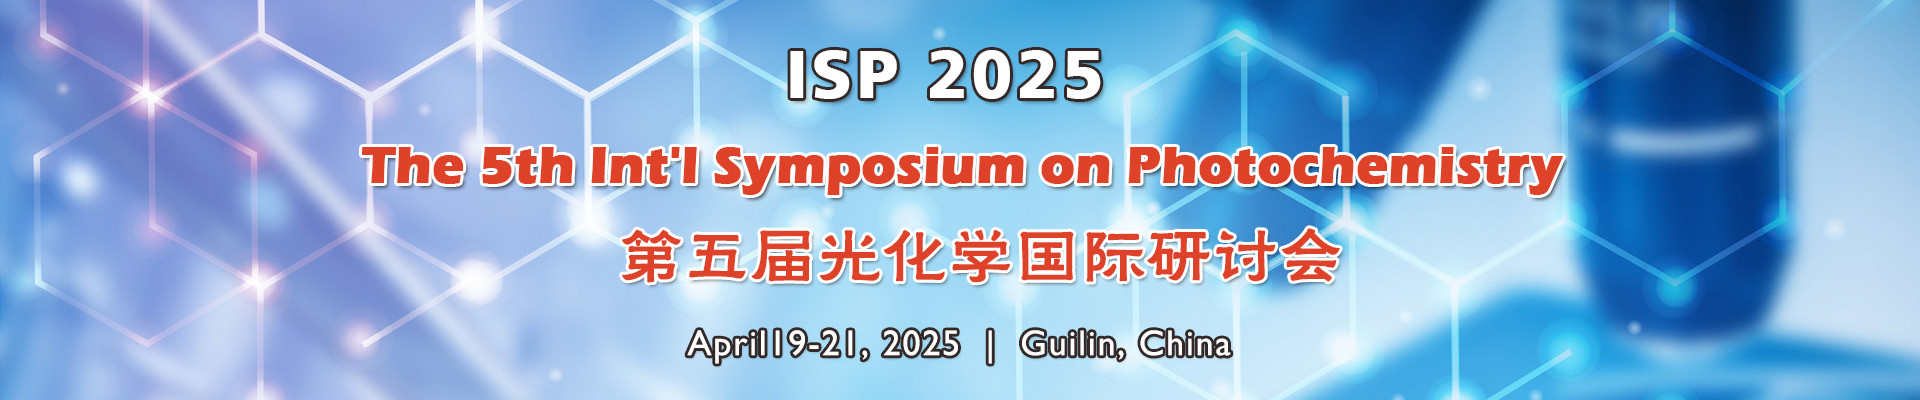 第五届光化学国际研讨会(ISP 2025)